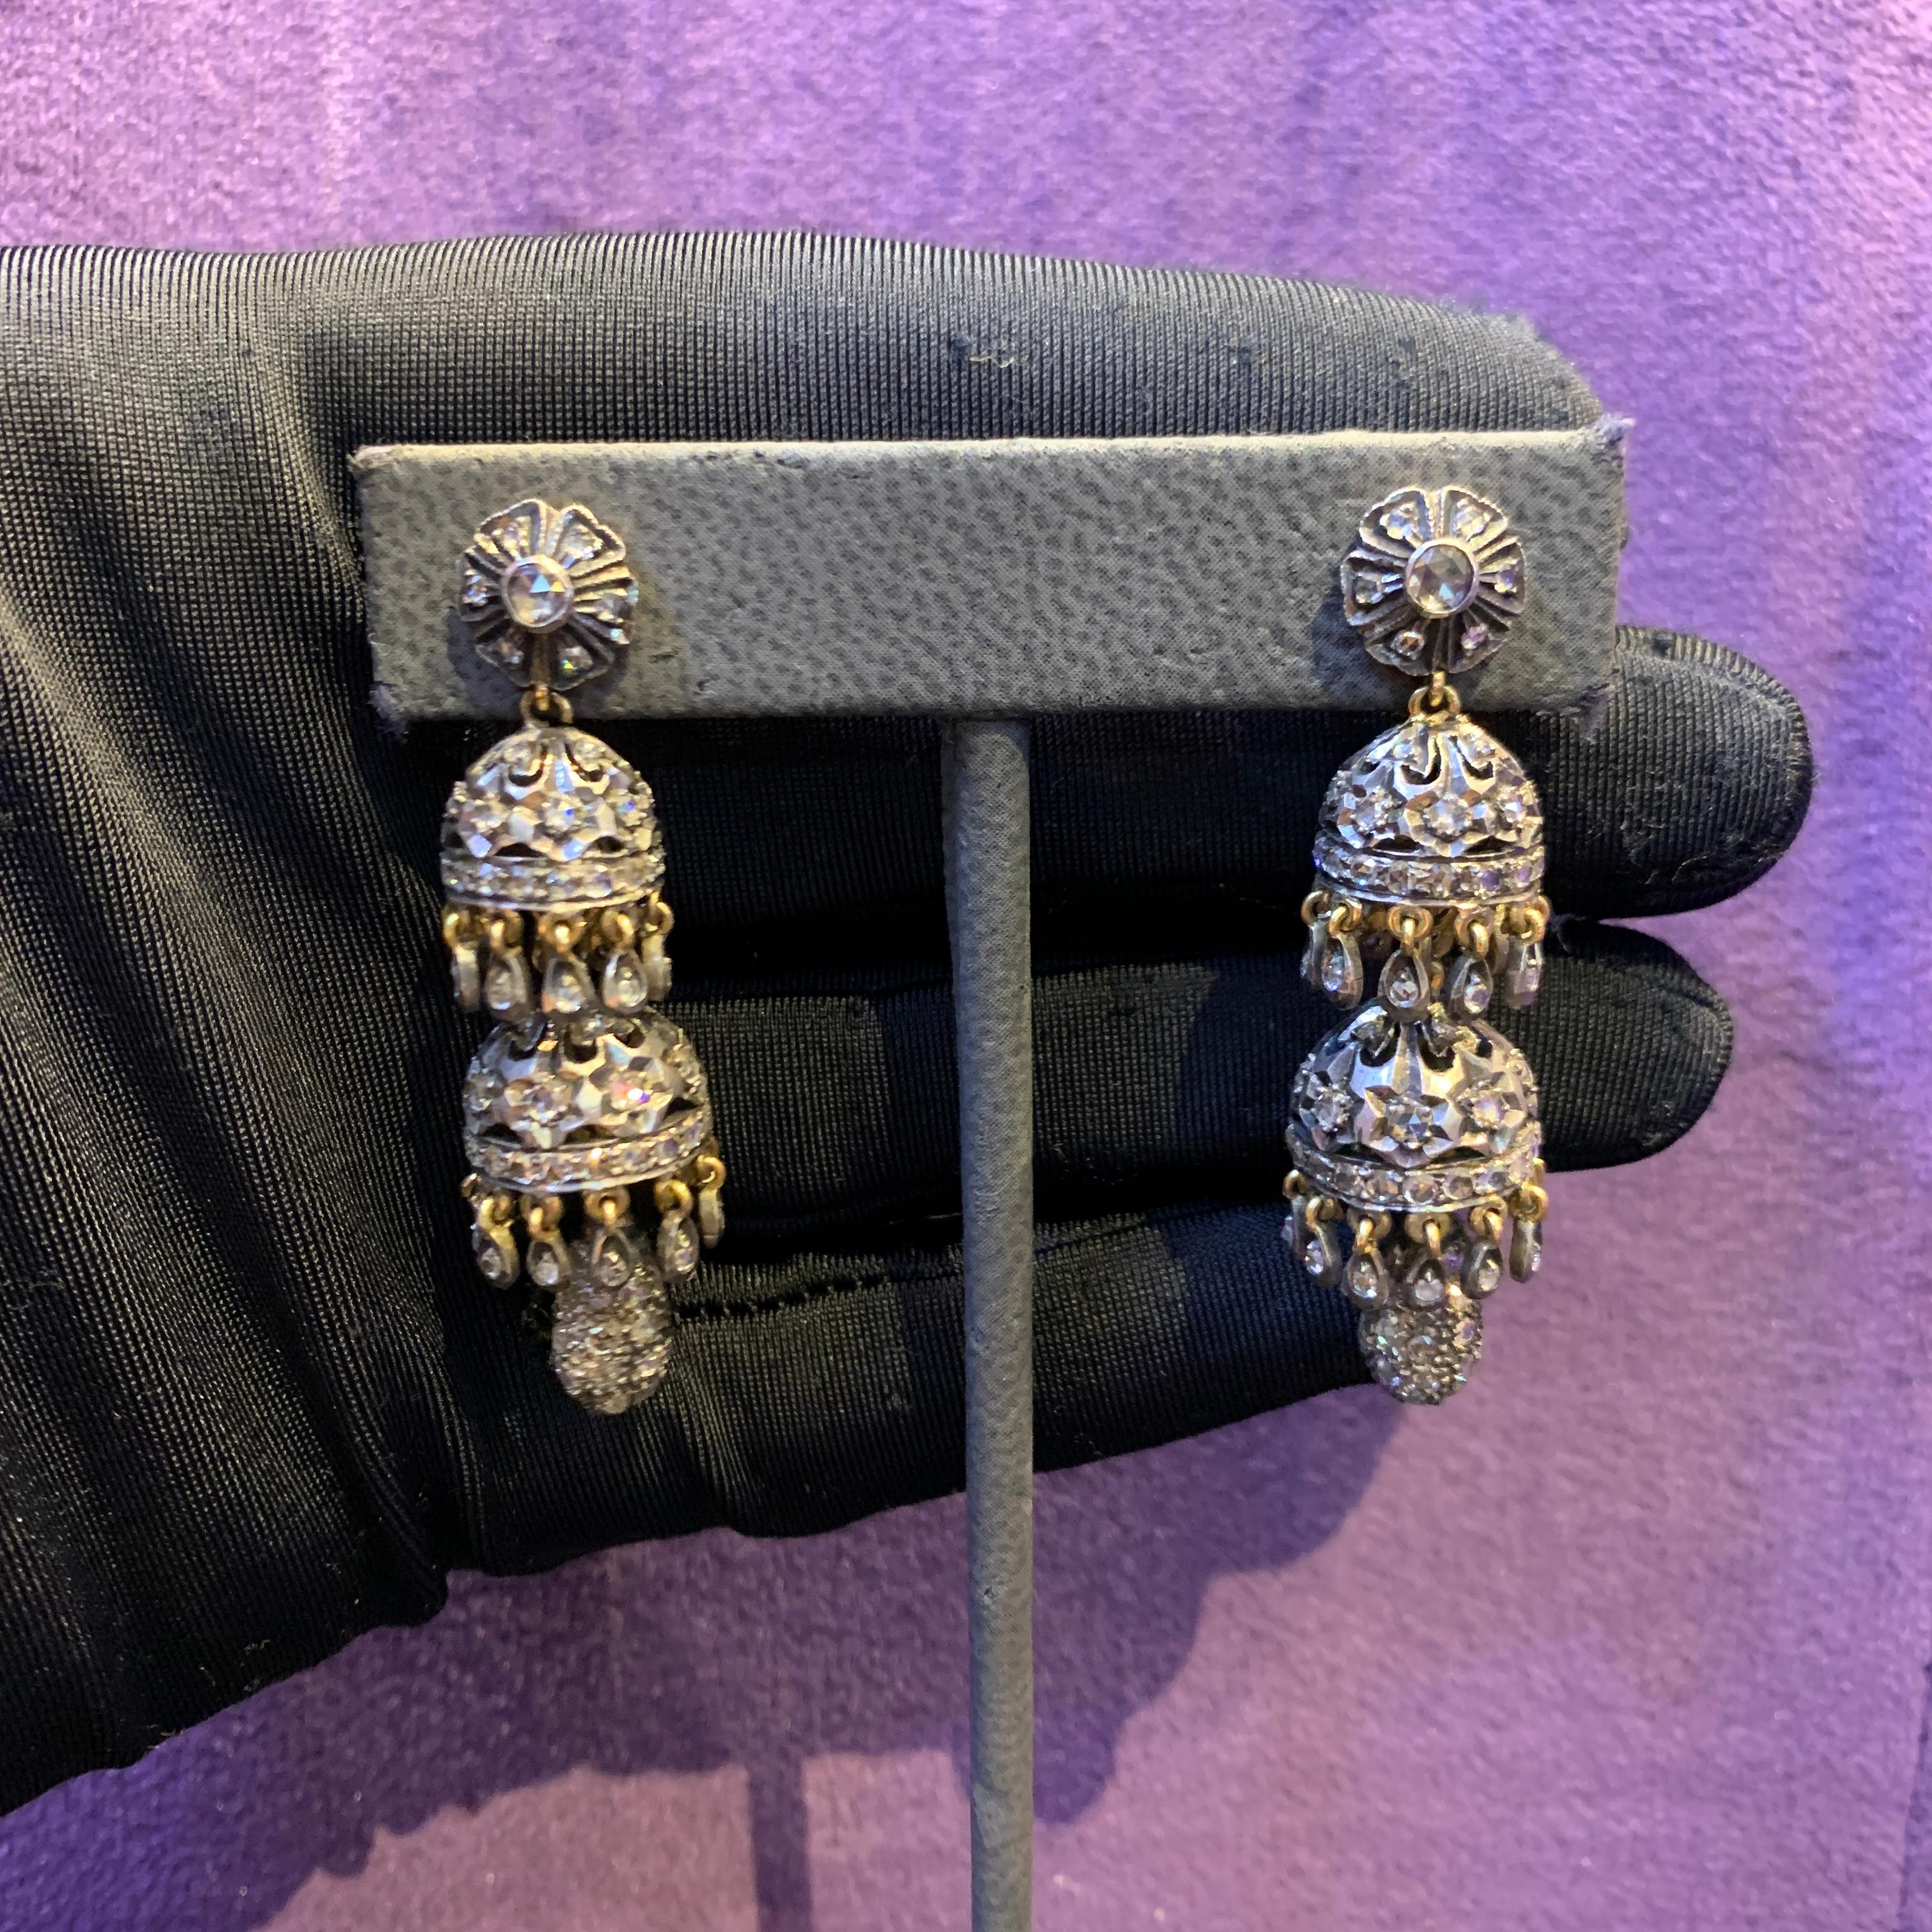 Diamant-Chandelier-Ohrringe

Ein Paar Ohrringe aus 18 Karat Gold und Silber, besetzt mit 216 Diamanten im Rosenschliff mit einem Gewicht von etwa 2,2 Karat

Länge: 2